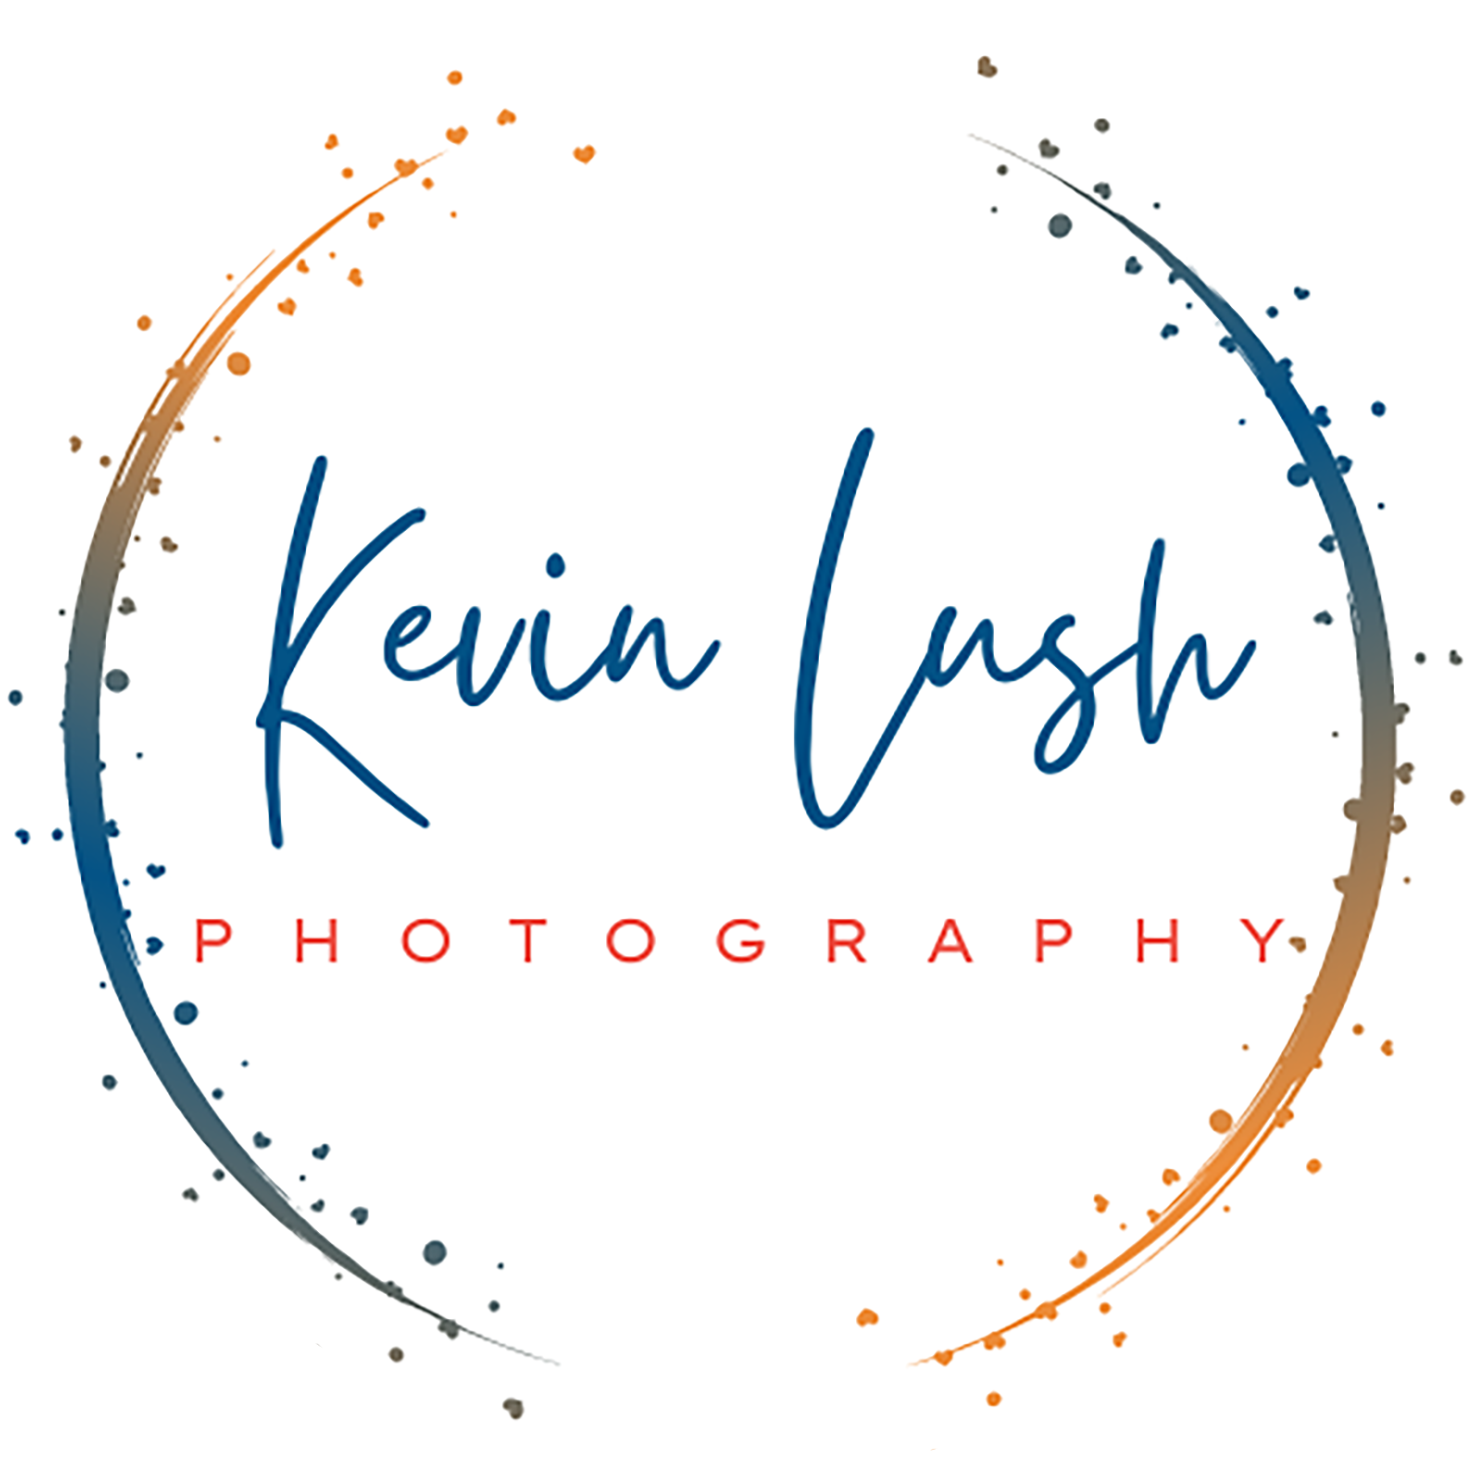 Kevin Lush